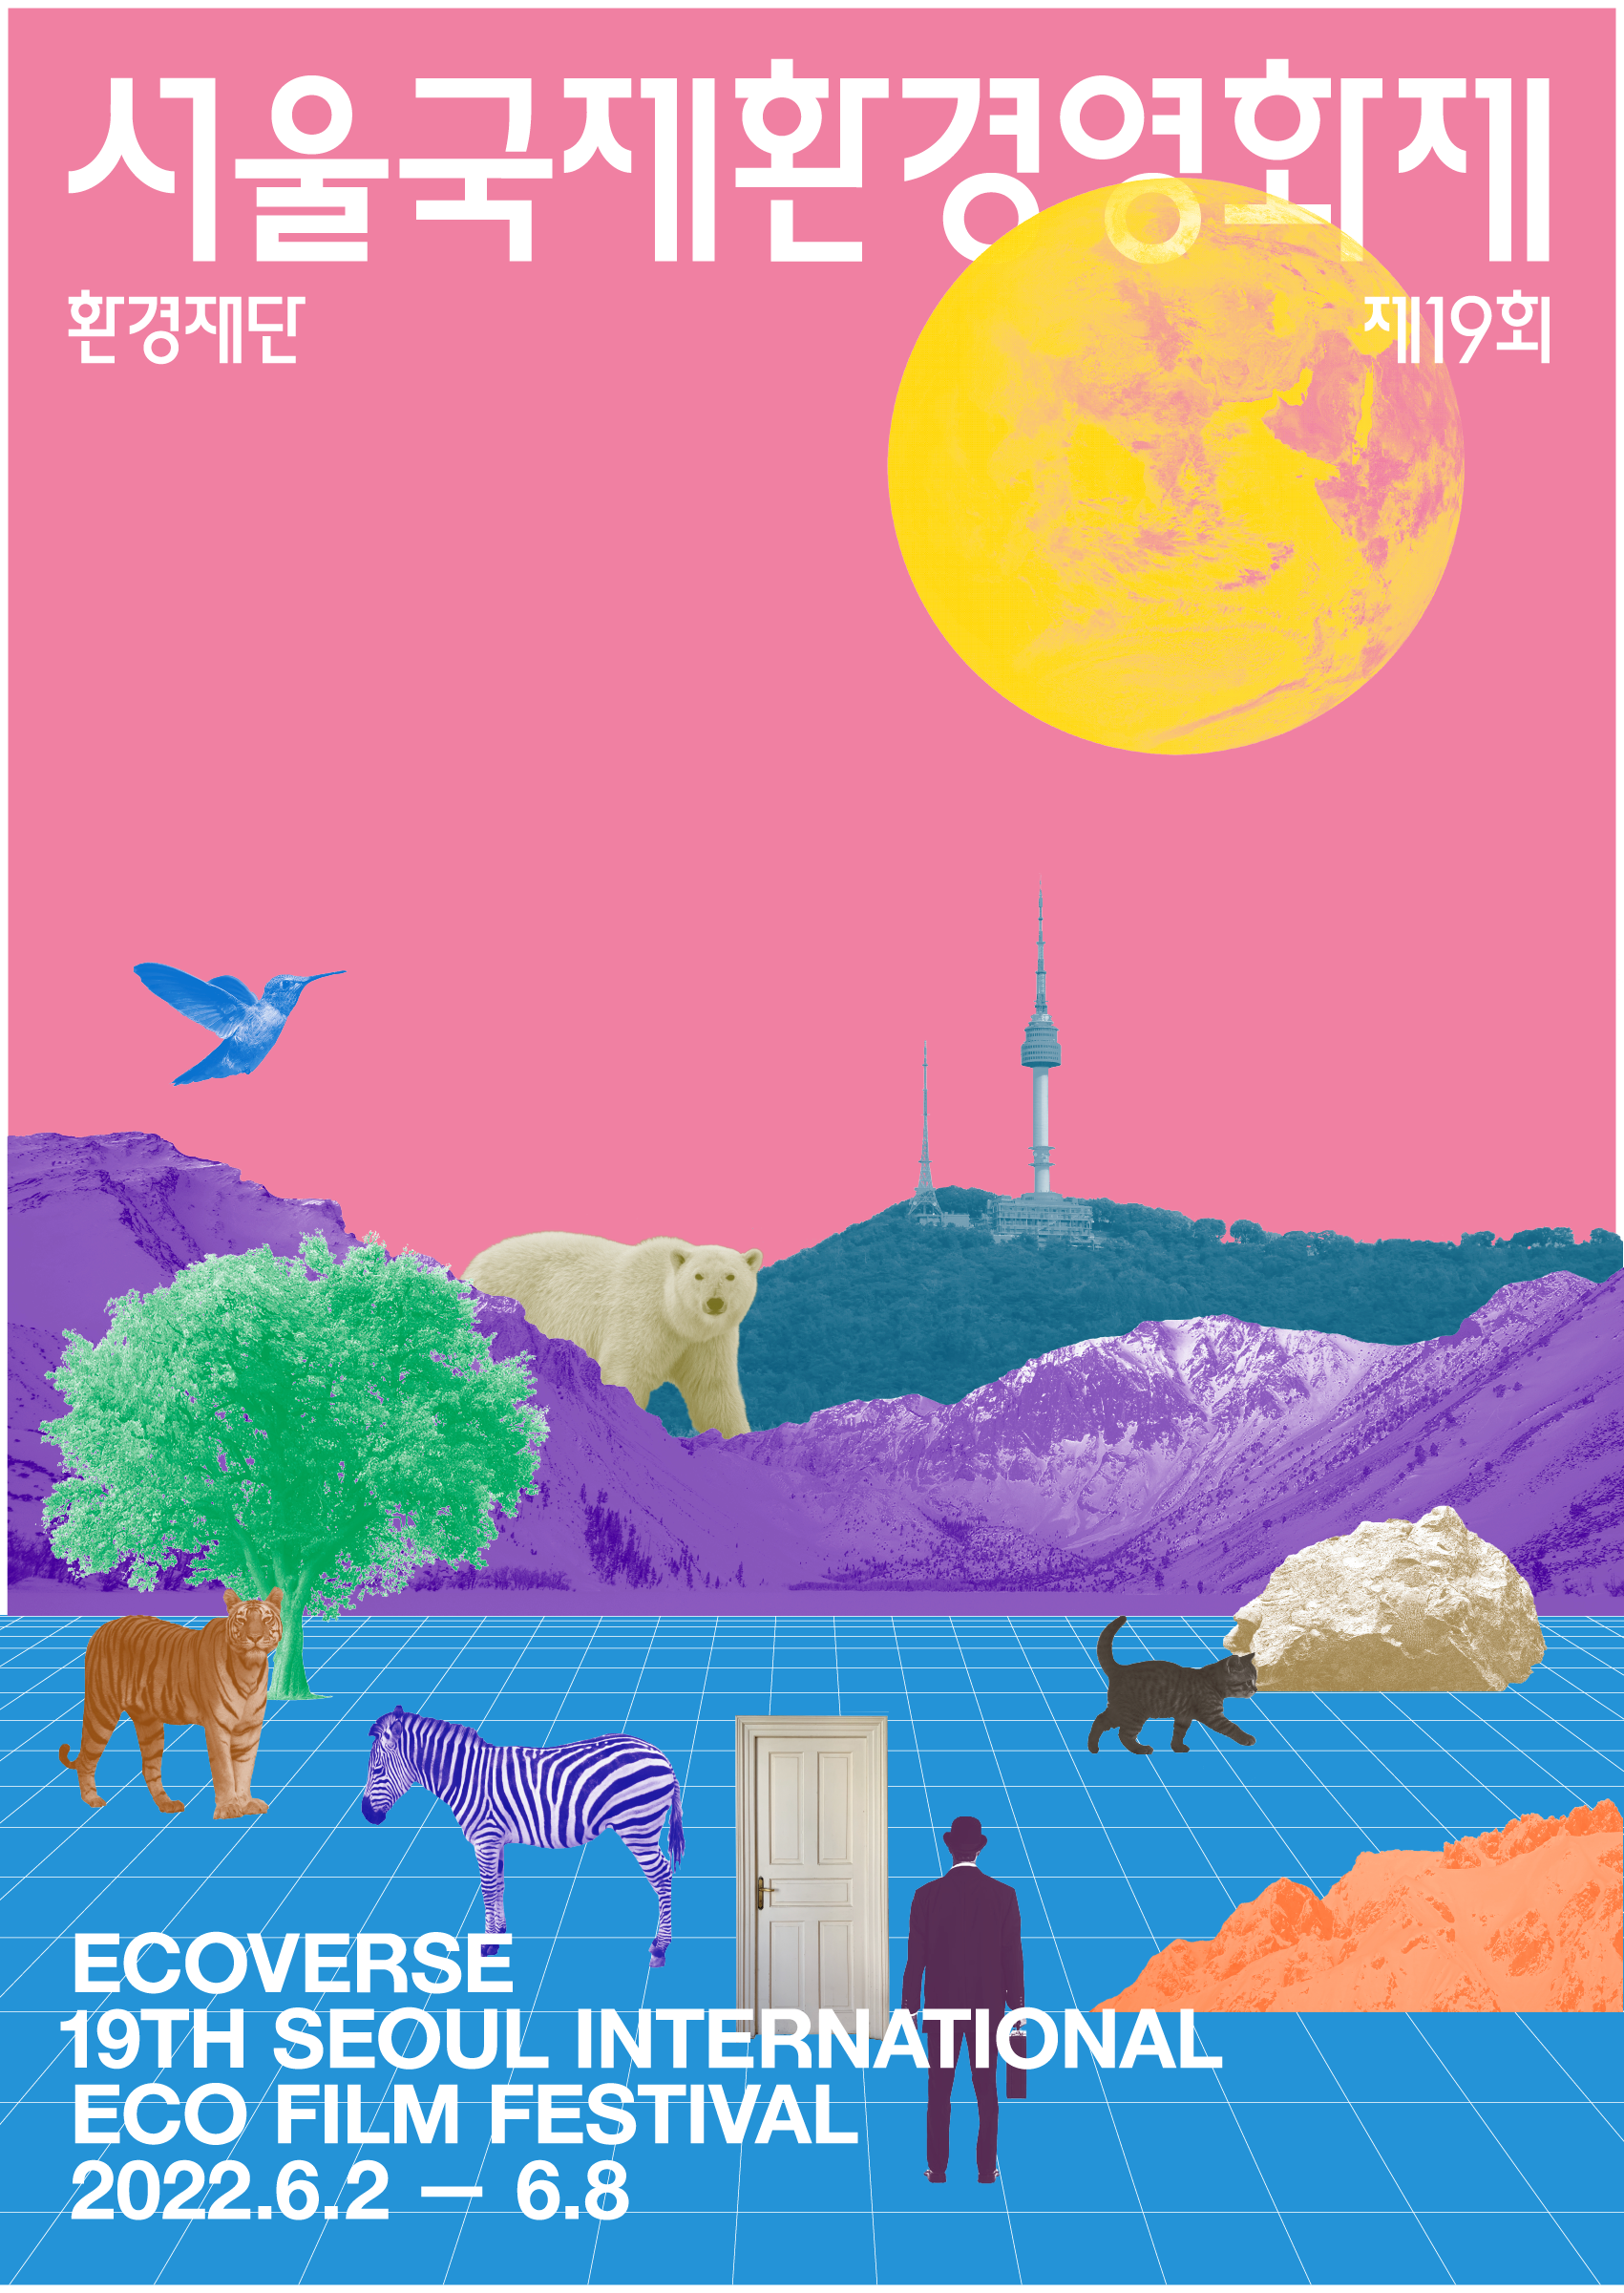 Seoul Eco Film Festival